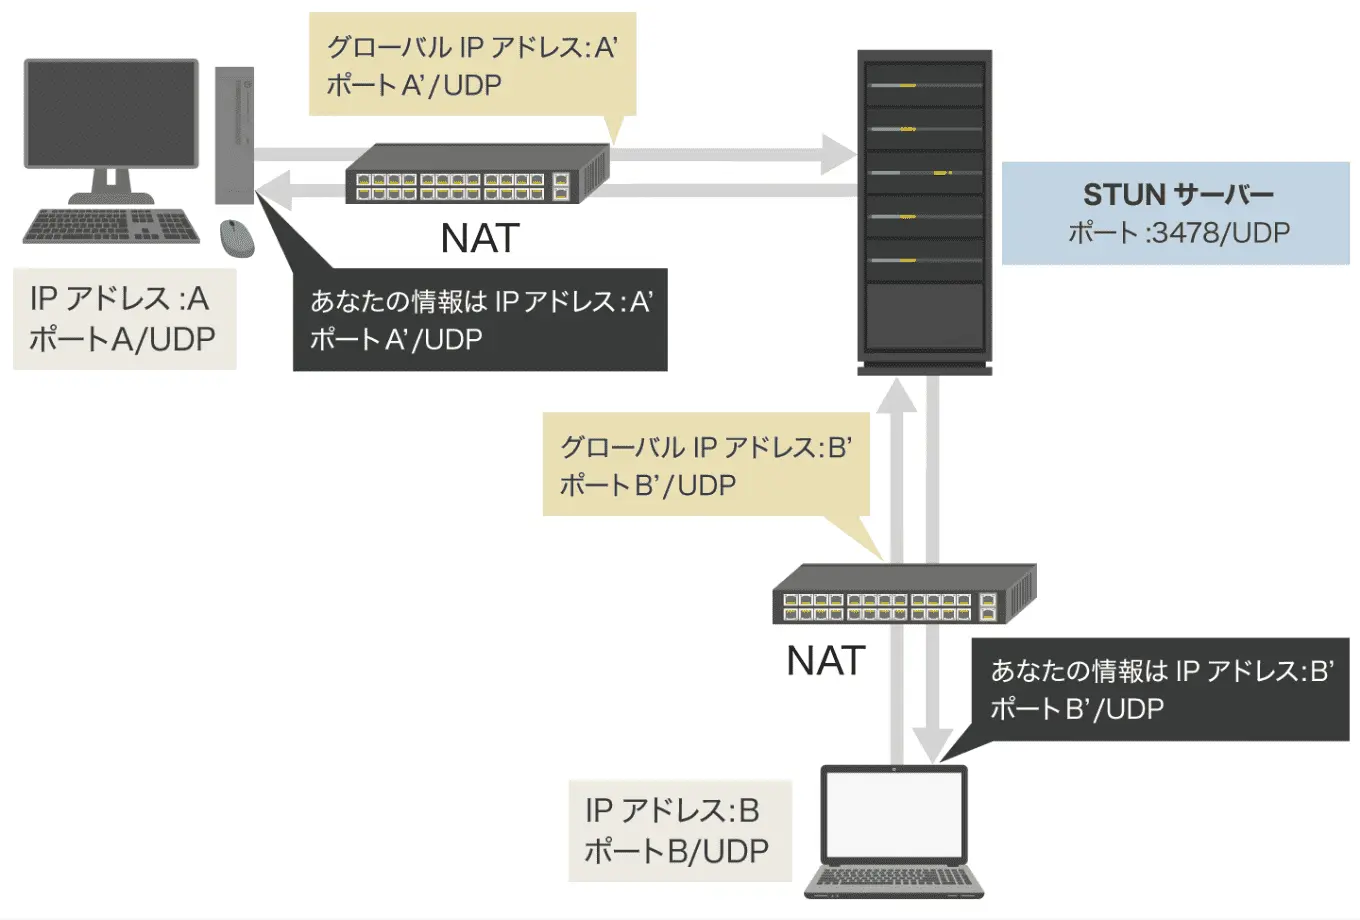 【図解】NAT経由の場合:STUNによる、グローバルIPアドレス、UDPポートの取得